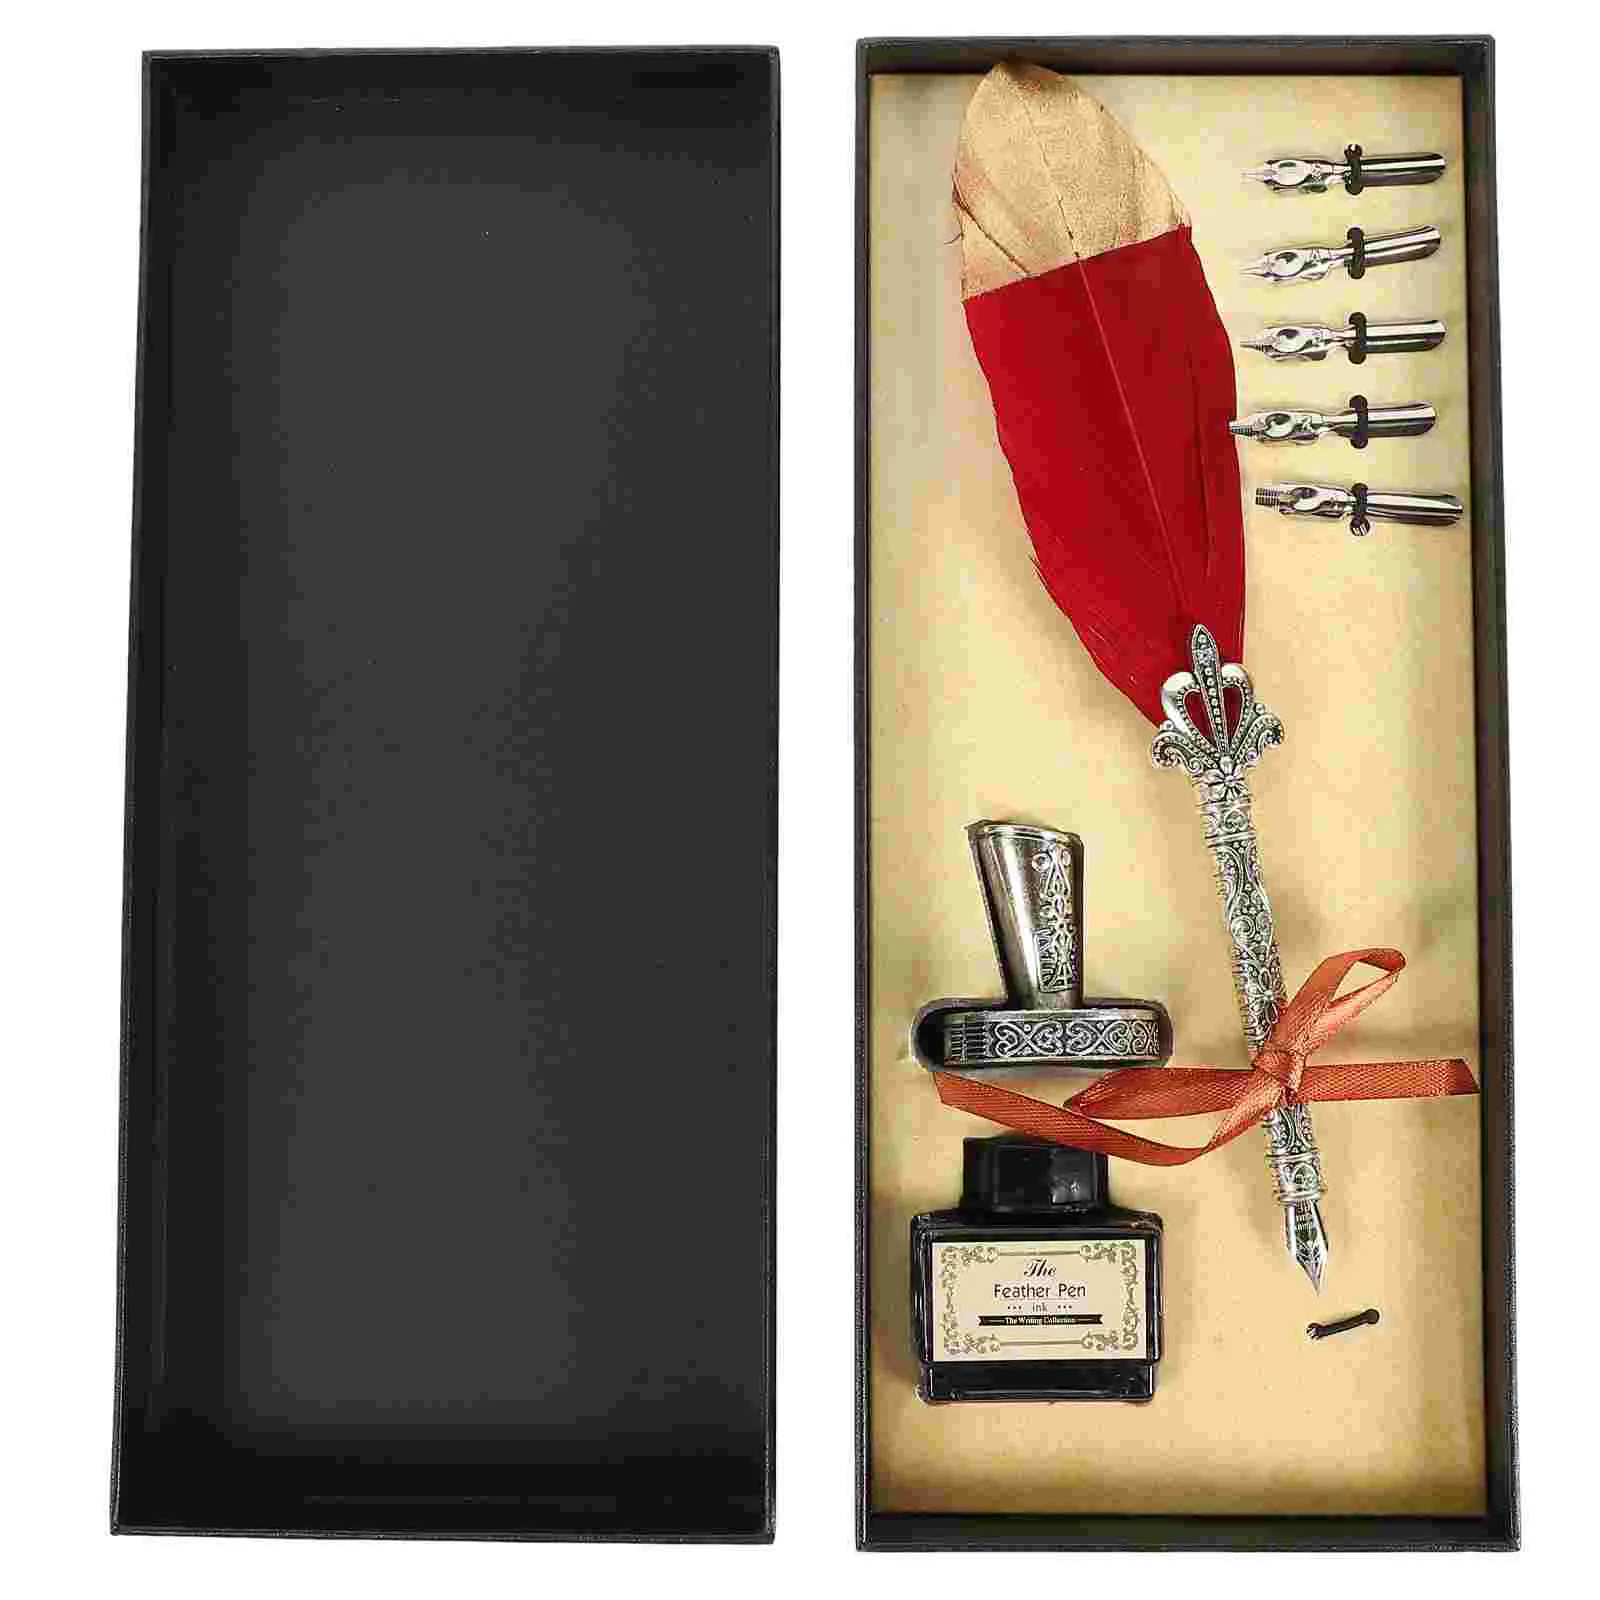 

Перьевая ручка в деловом стиле, набор наконечников для каллиграфии, чернила, перьевая сталь, подарок на день рождения